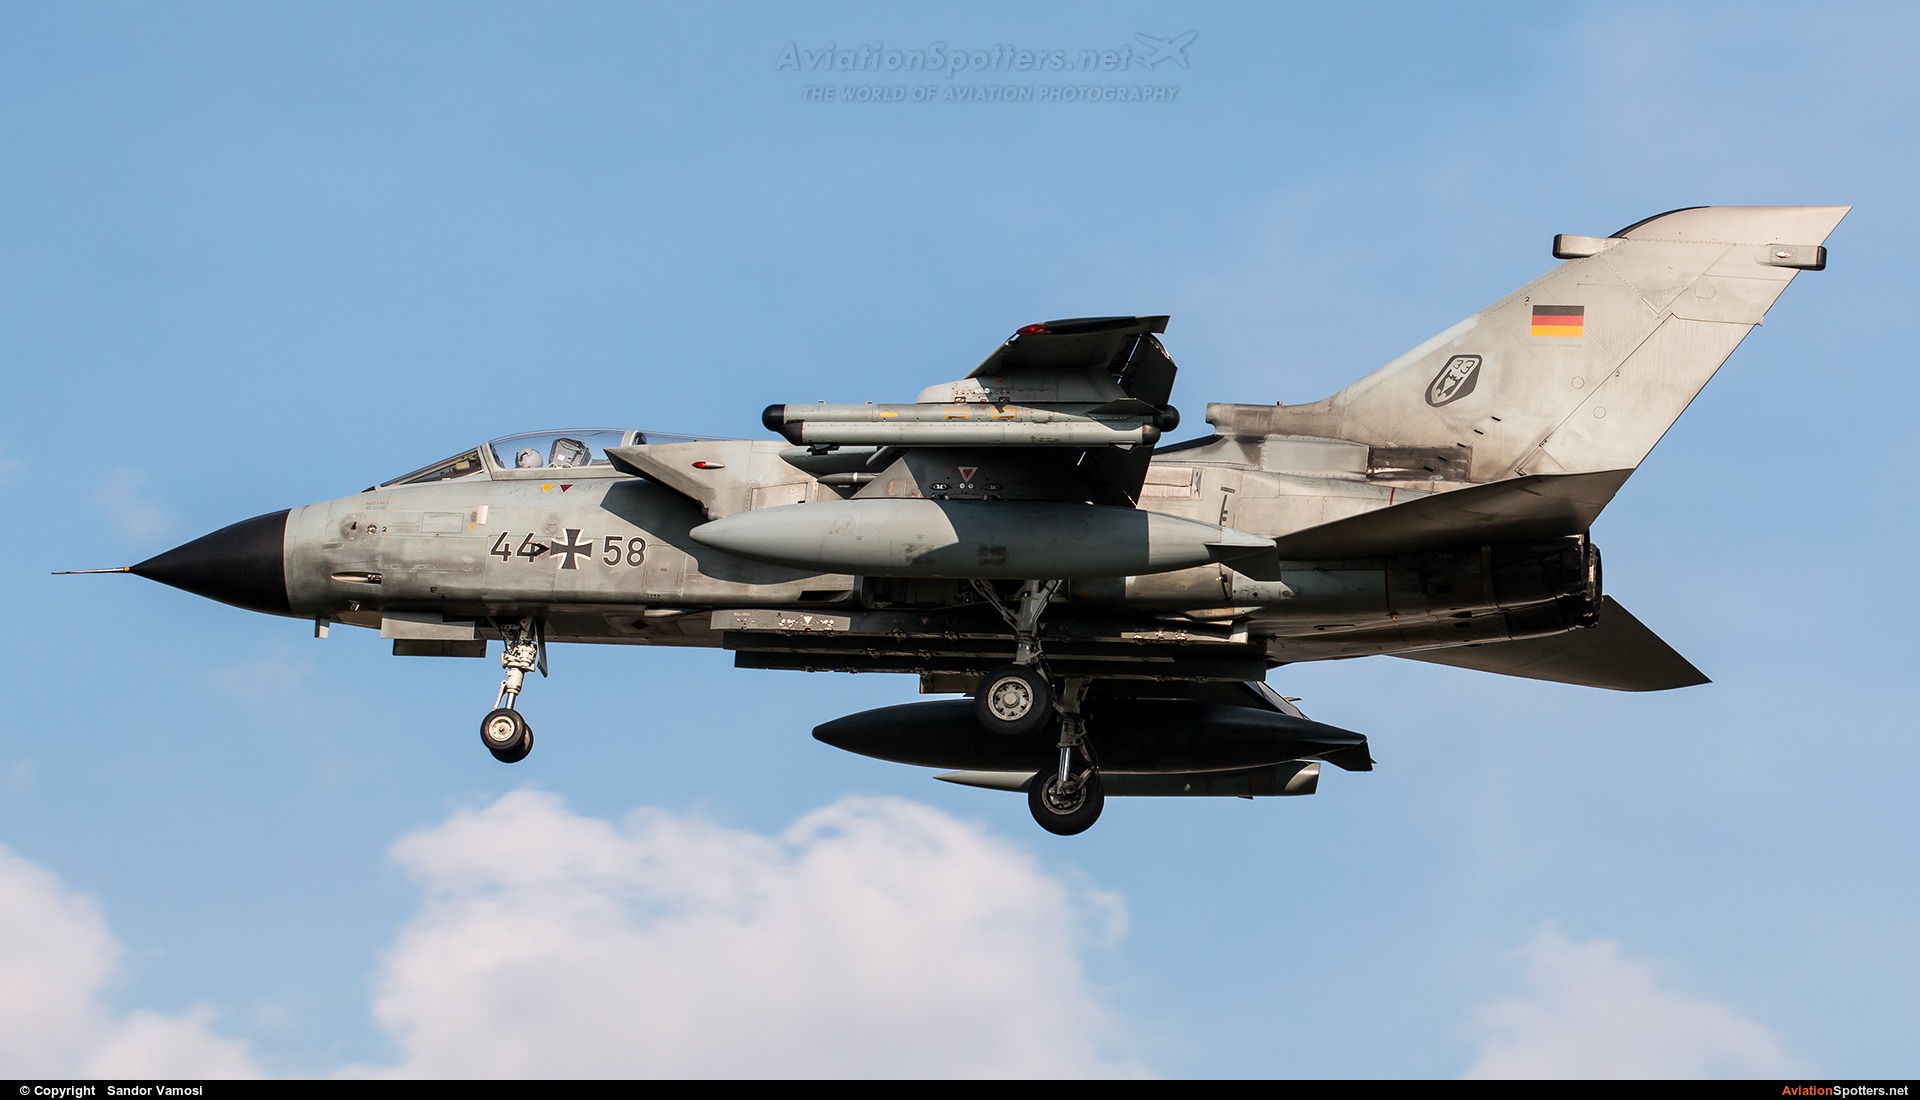 Germany - Air Force  -  Tornado - ECR  (44+58) By Sandor Vamosi (ALEX67)